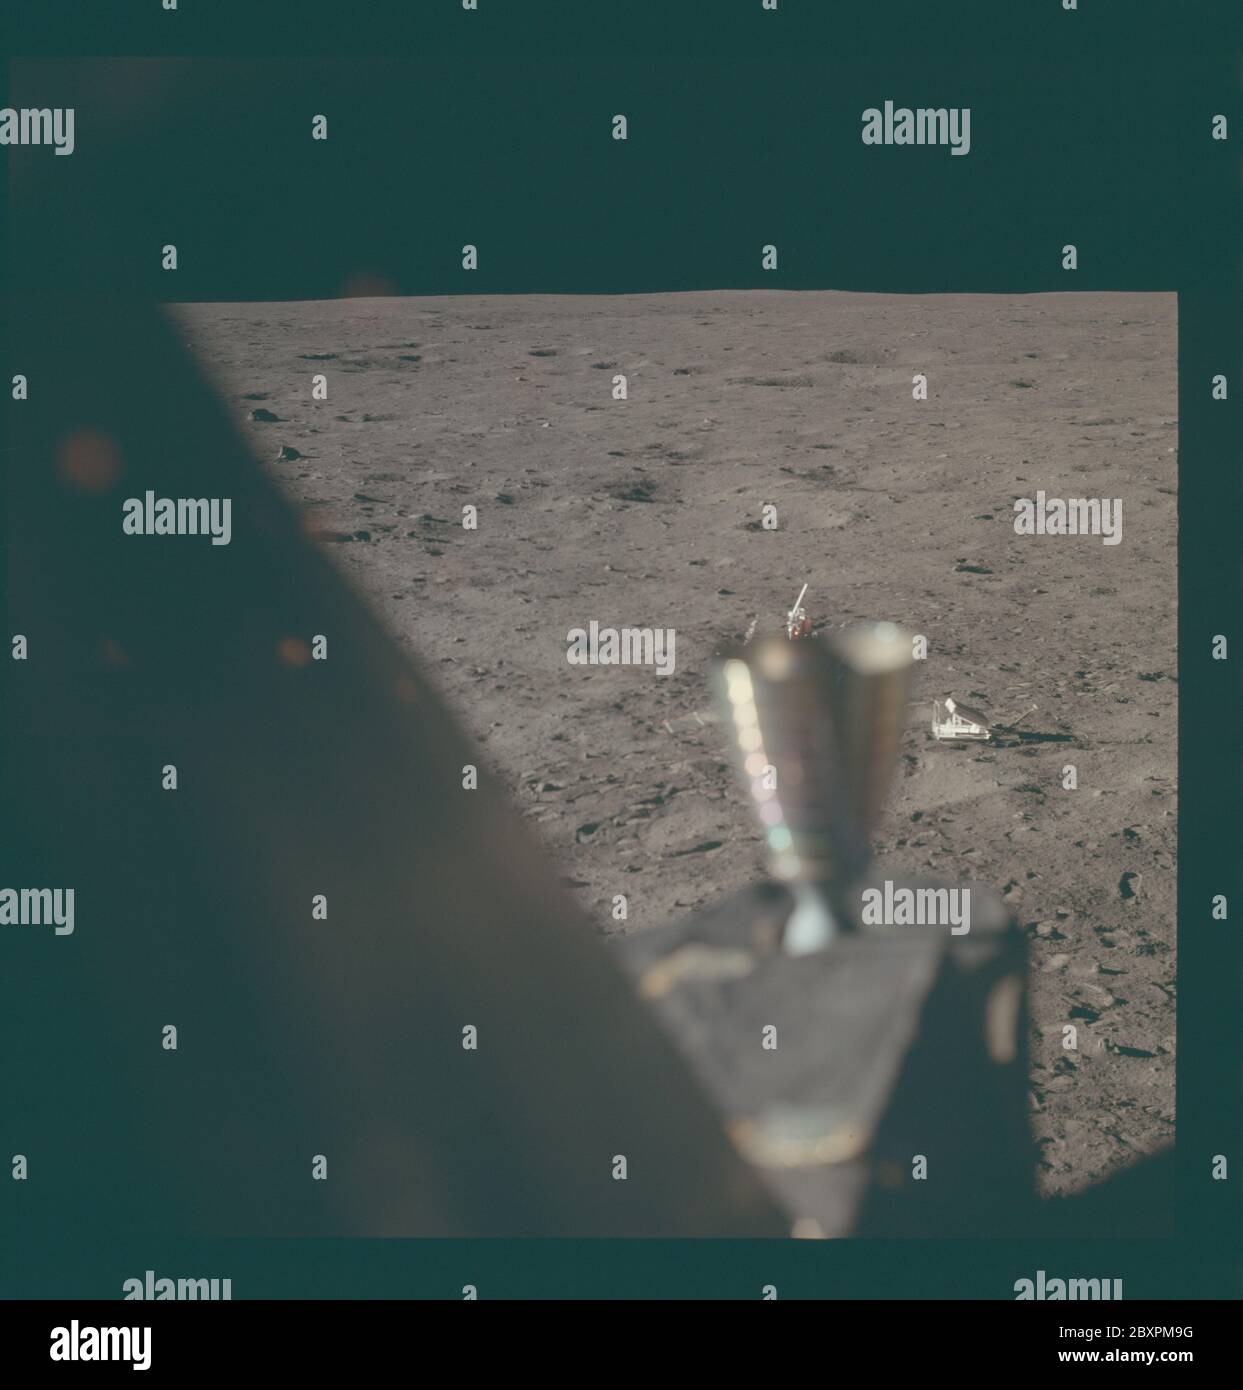 AS11-37-5499 - Apollo 11 - Apollo 11 image de la mission - horizon lunaire de la base de tranquilité; portée et contenu: La base de données originale décrit ceci comme: Description: Horizon lunaire de la base de tranquilité, le site d'atterrissage du module lunaire (LM). Le propulseur LM est visible au premier plan. Image prise de l'intérieur du LM pendant la mission Apollo 11. Le magazine original a été étiqueté R. Type de film : EKTACHROME EF SO 168 couleur sur une base en polyester Estar de 2.5 mil, prise avec un objectif de 80 mm. L'angle du soleil est faible. Inclinaison approximative : oblique moyen. Descripteurs : vol Apollo 11, Lune, sites d'atterrissage lunaire catégories : Luna Banque D'Images